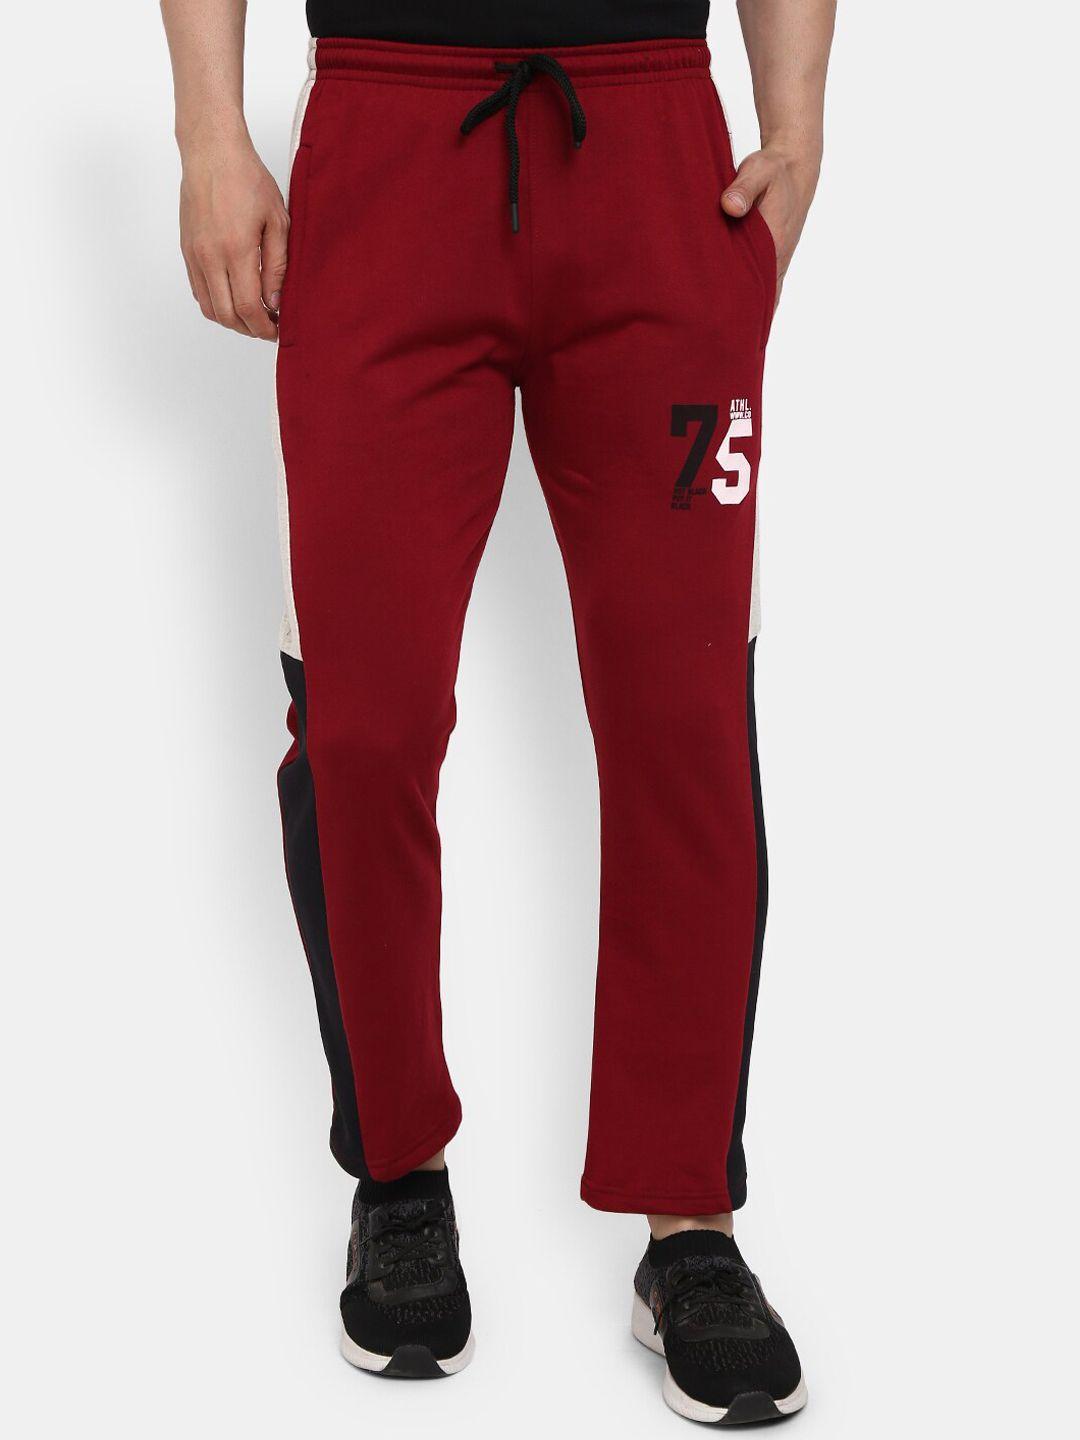 v-mart-men-red-&-black-solid-cotton-track-pants